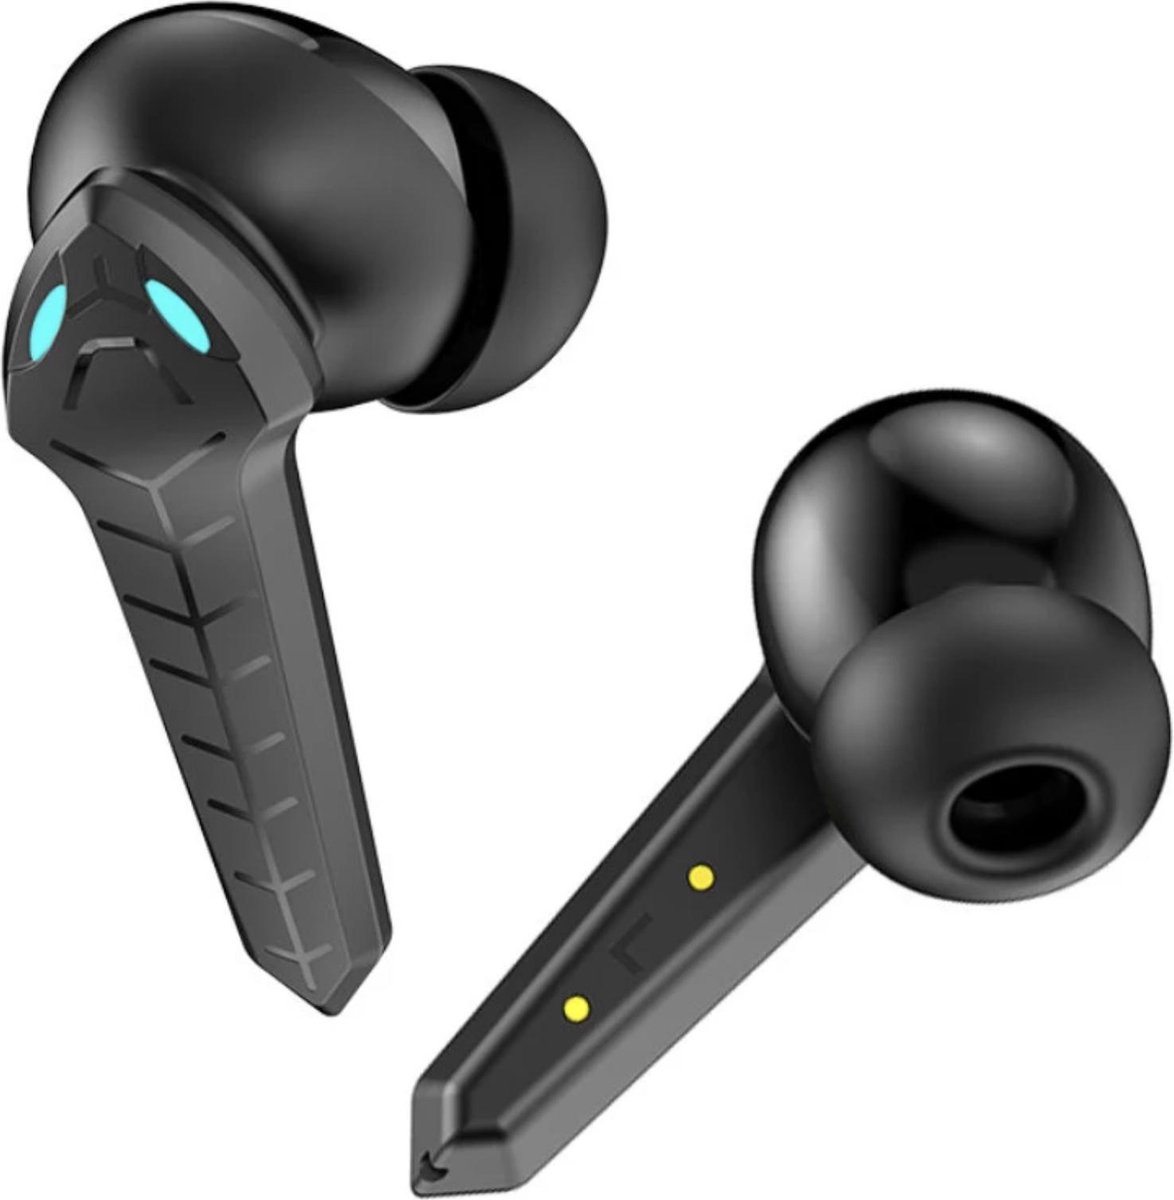 TWS - Draadloze oortjes / in-ear oordopjes - Bluetooth Draadloze buds - Luxe indicator - Alternatief - Geschikt voor alle smartphones o.a Samsung & Iphone, huawei, sony - Zwart.